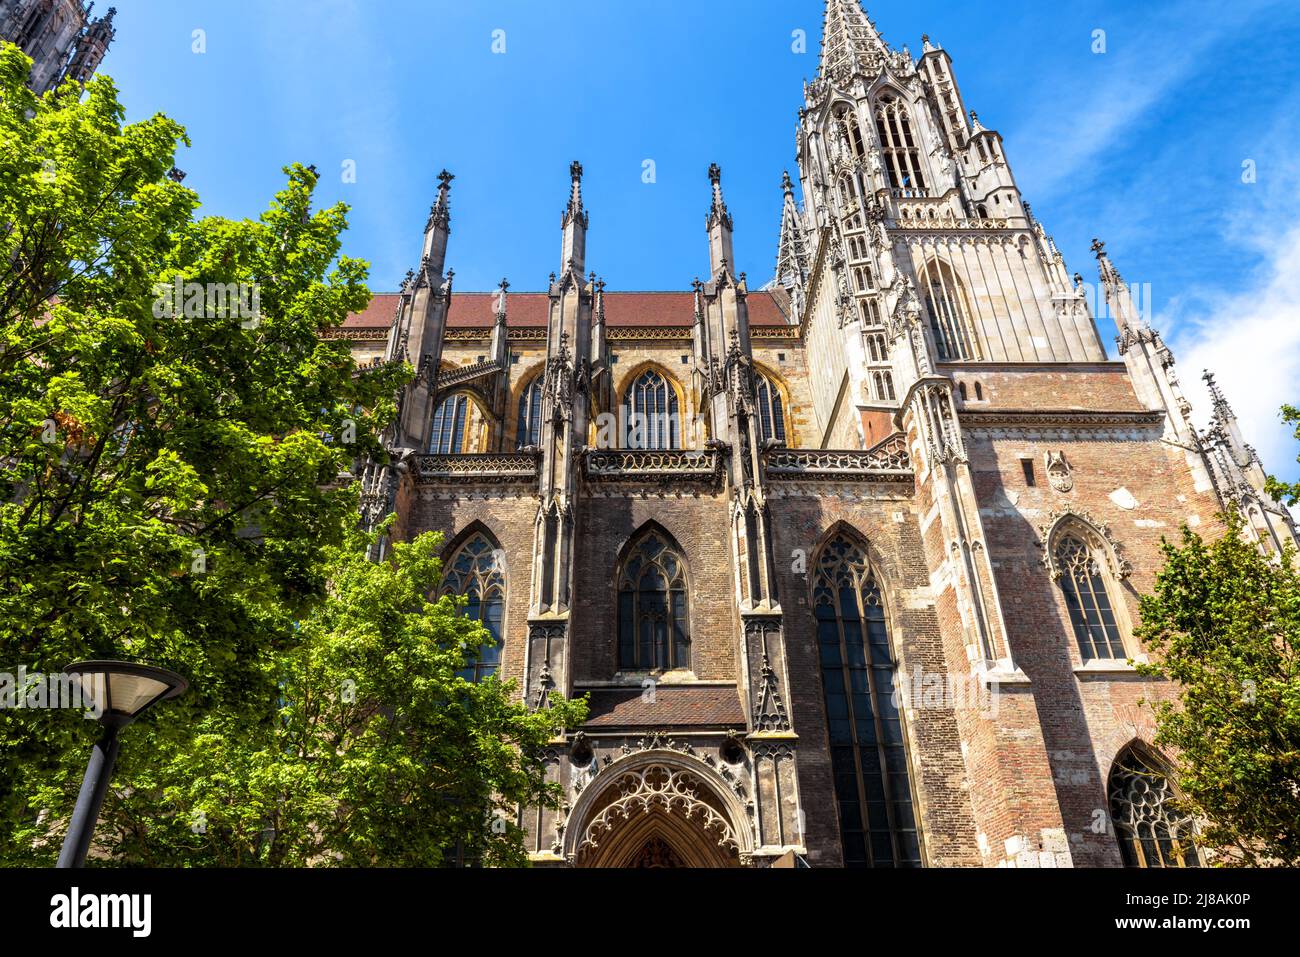 Cattedrale di Ulm in estate, Germania, Europa. E' il punto di riferimento principale della citta' di Ulm. Scenario di facciata ornata di vecchia chiesa gotica, edificio medievale nella città di Ulm Foto Stock